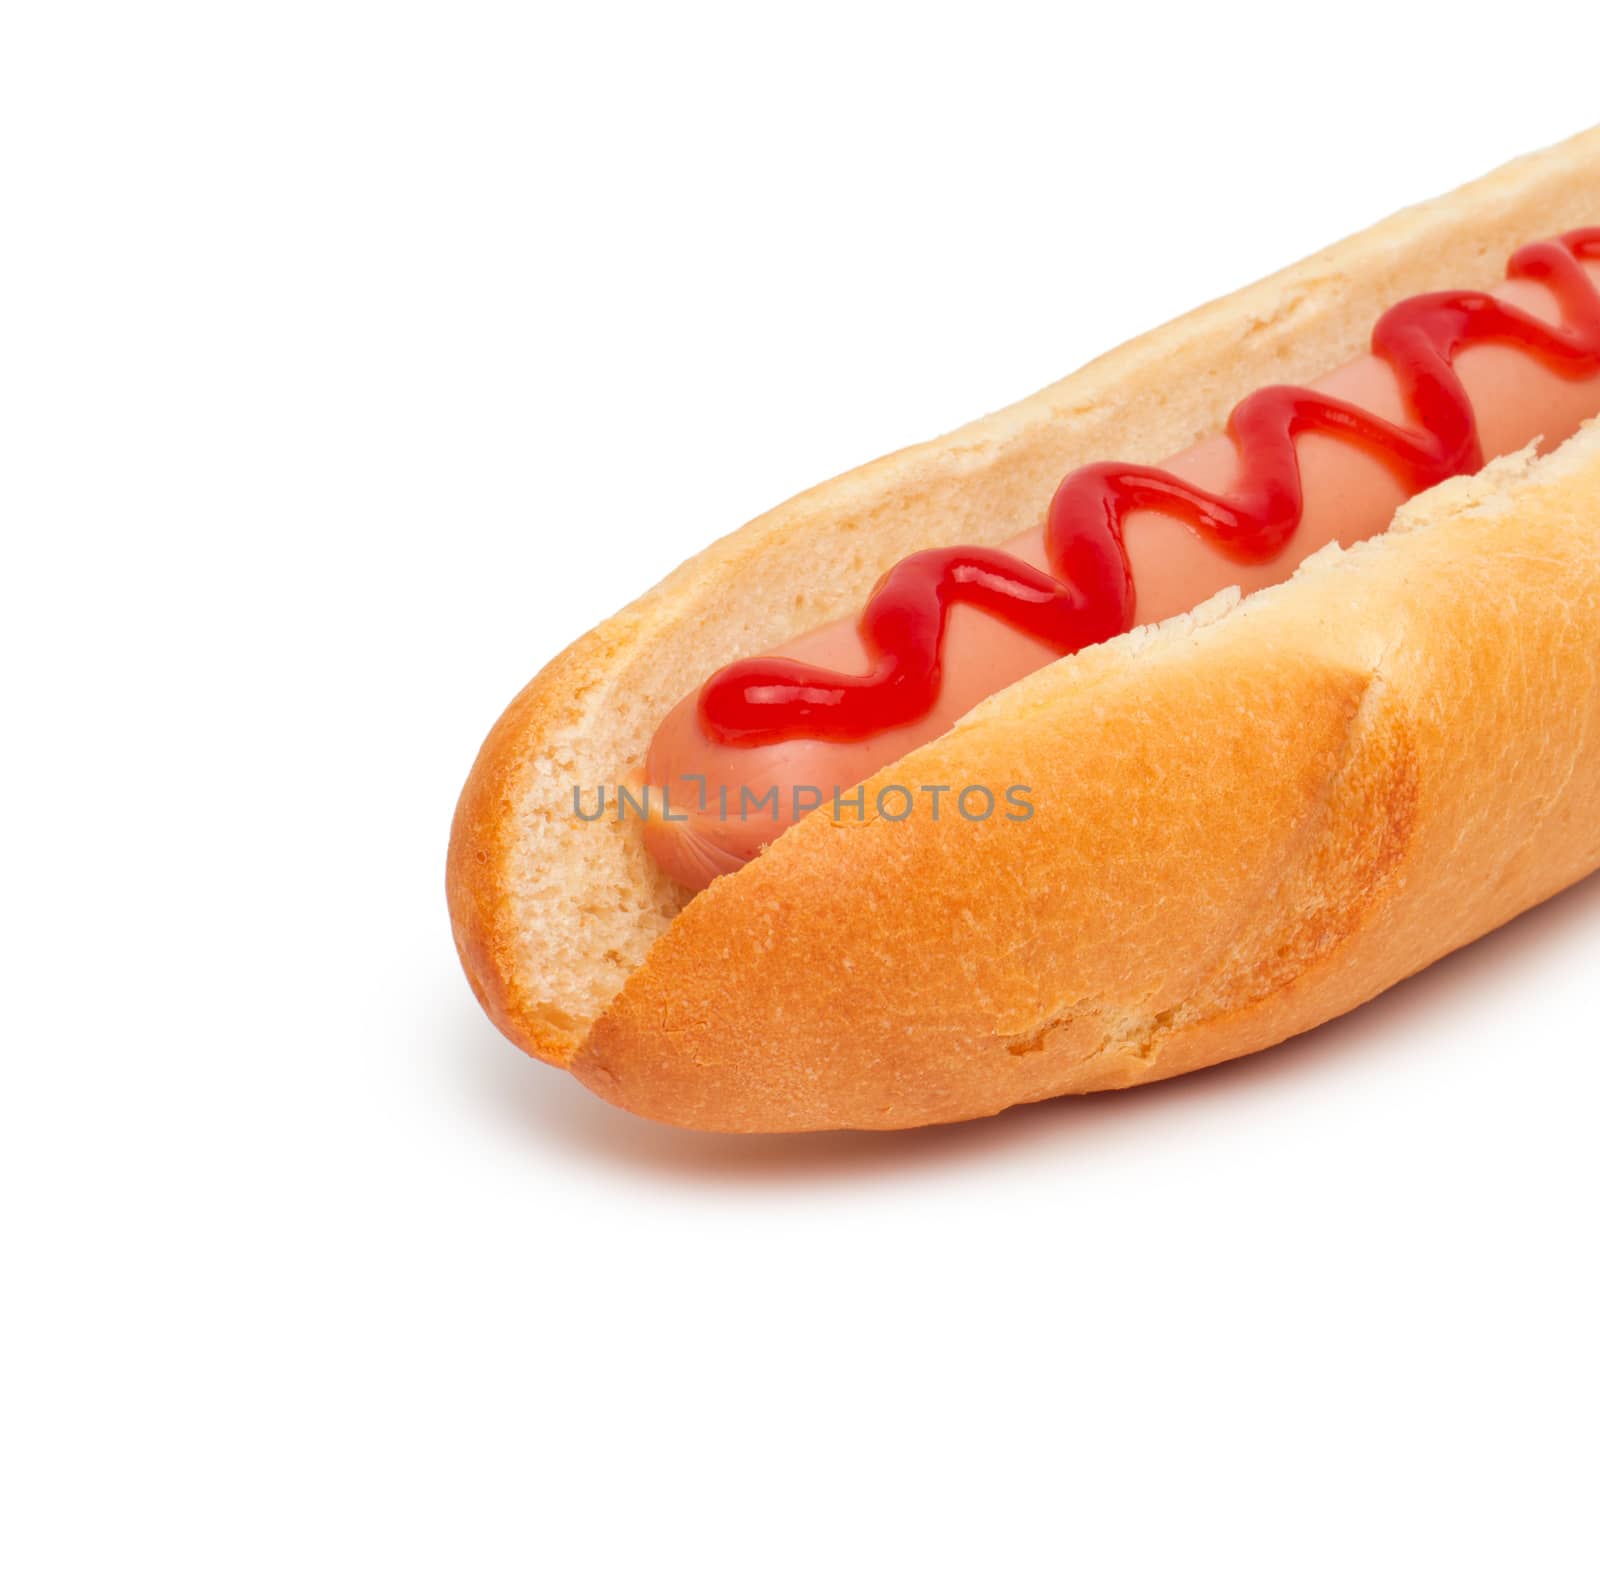 hot dog close-up on white background